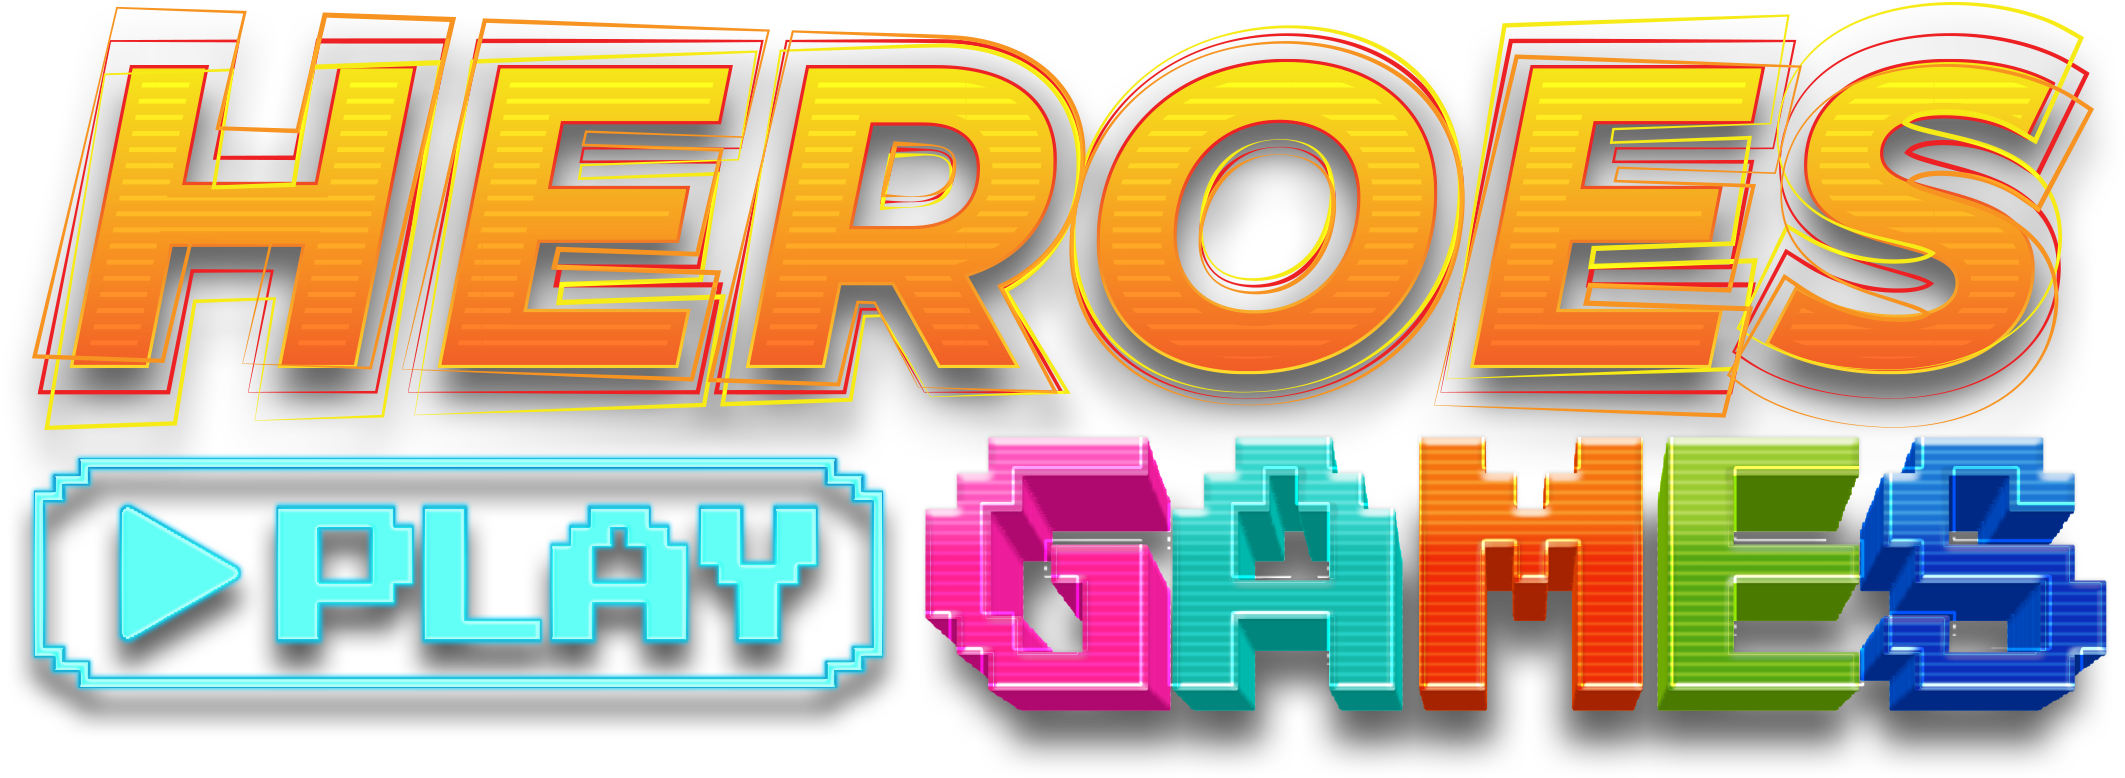 Heroes Play Games Logo